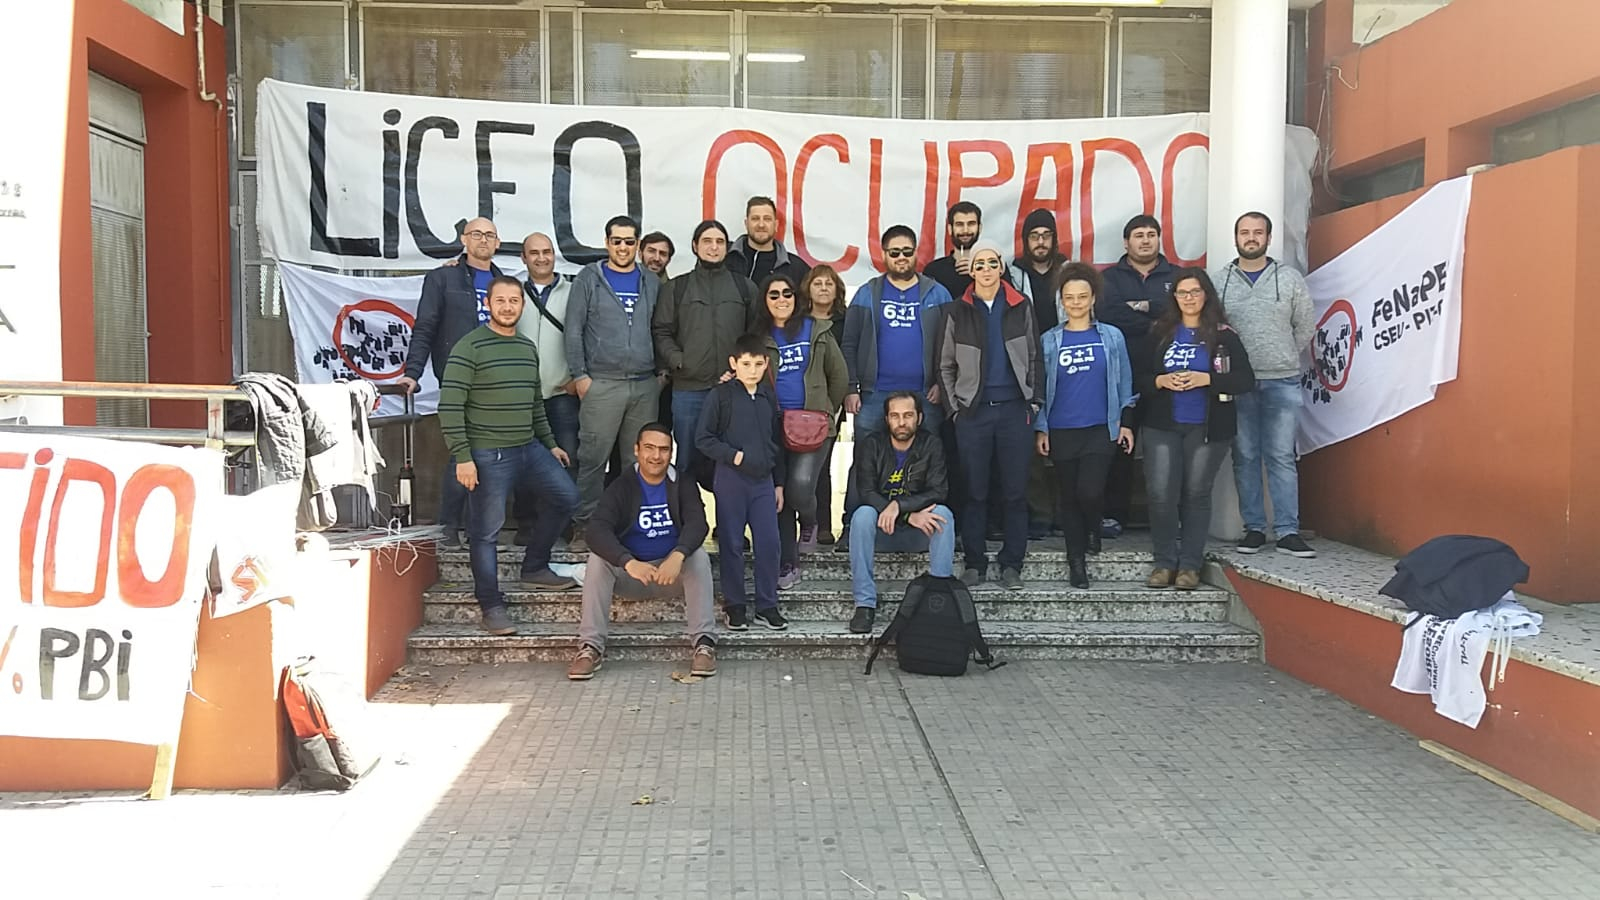 Tres días de movilizaciones regionales en Uruguay